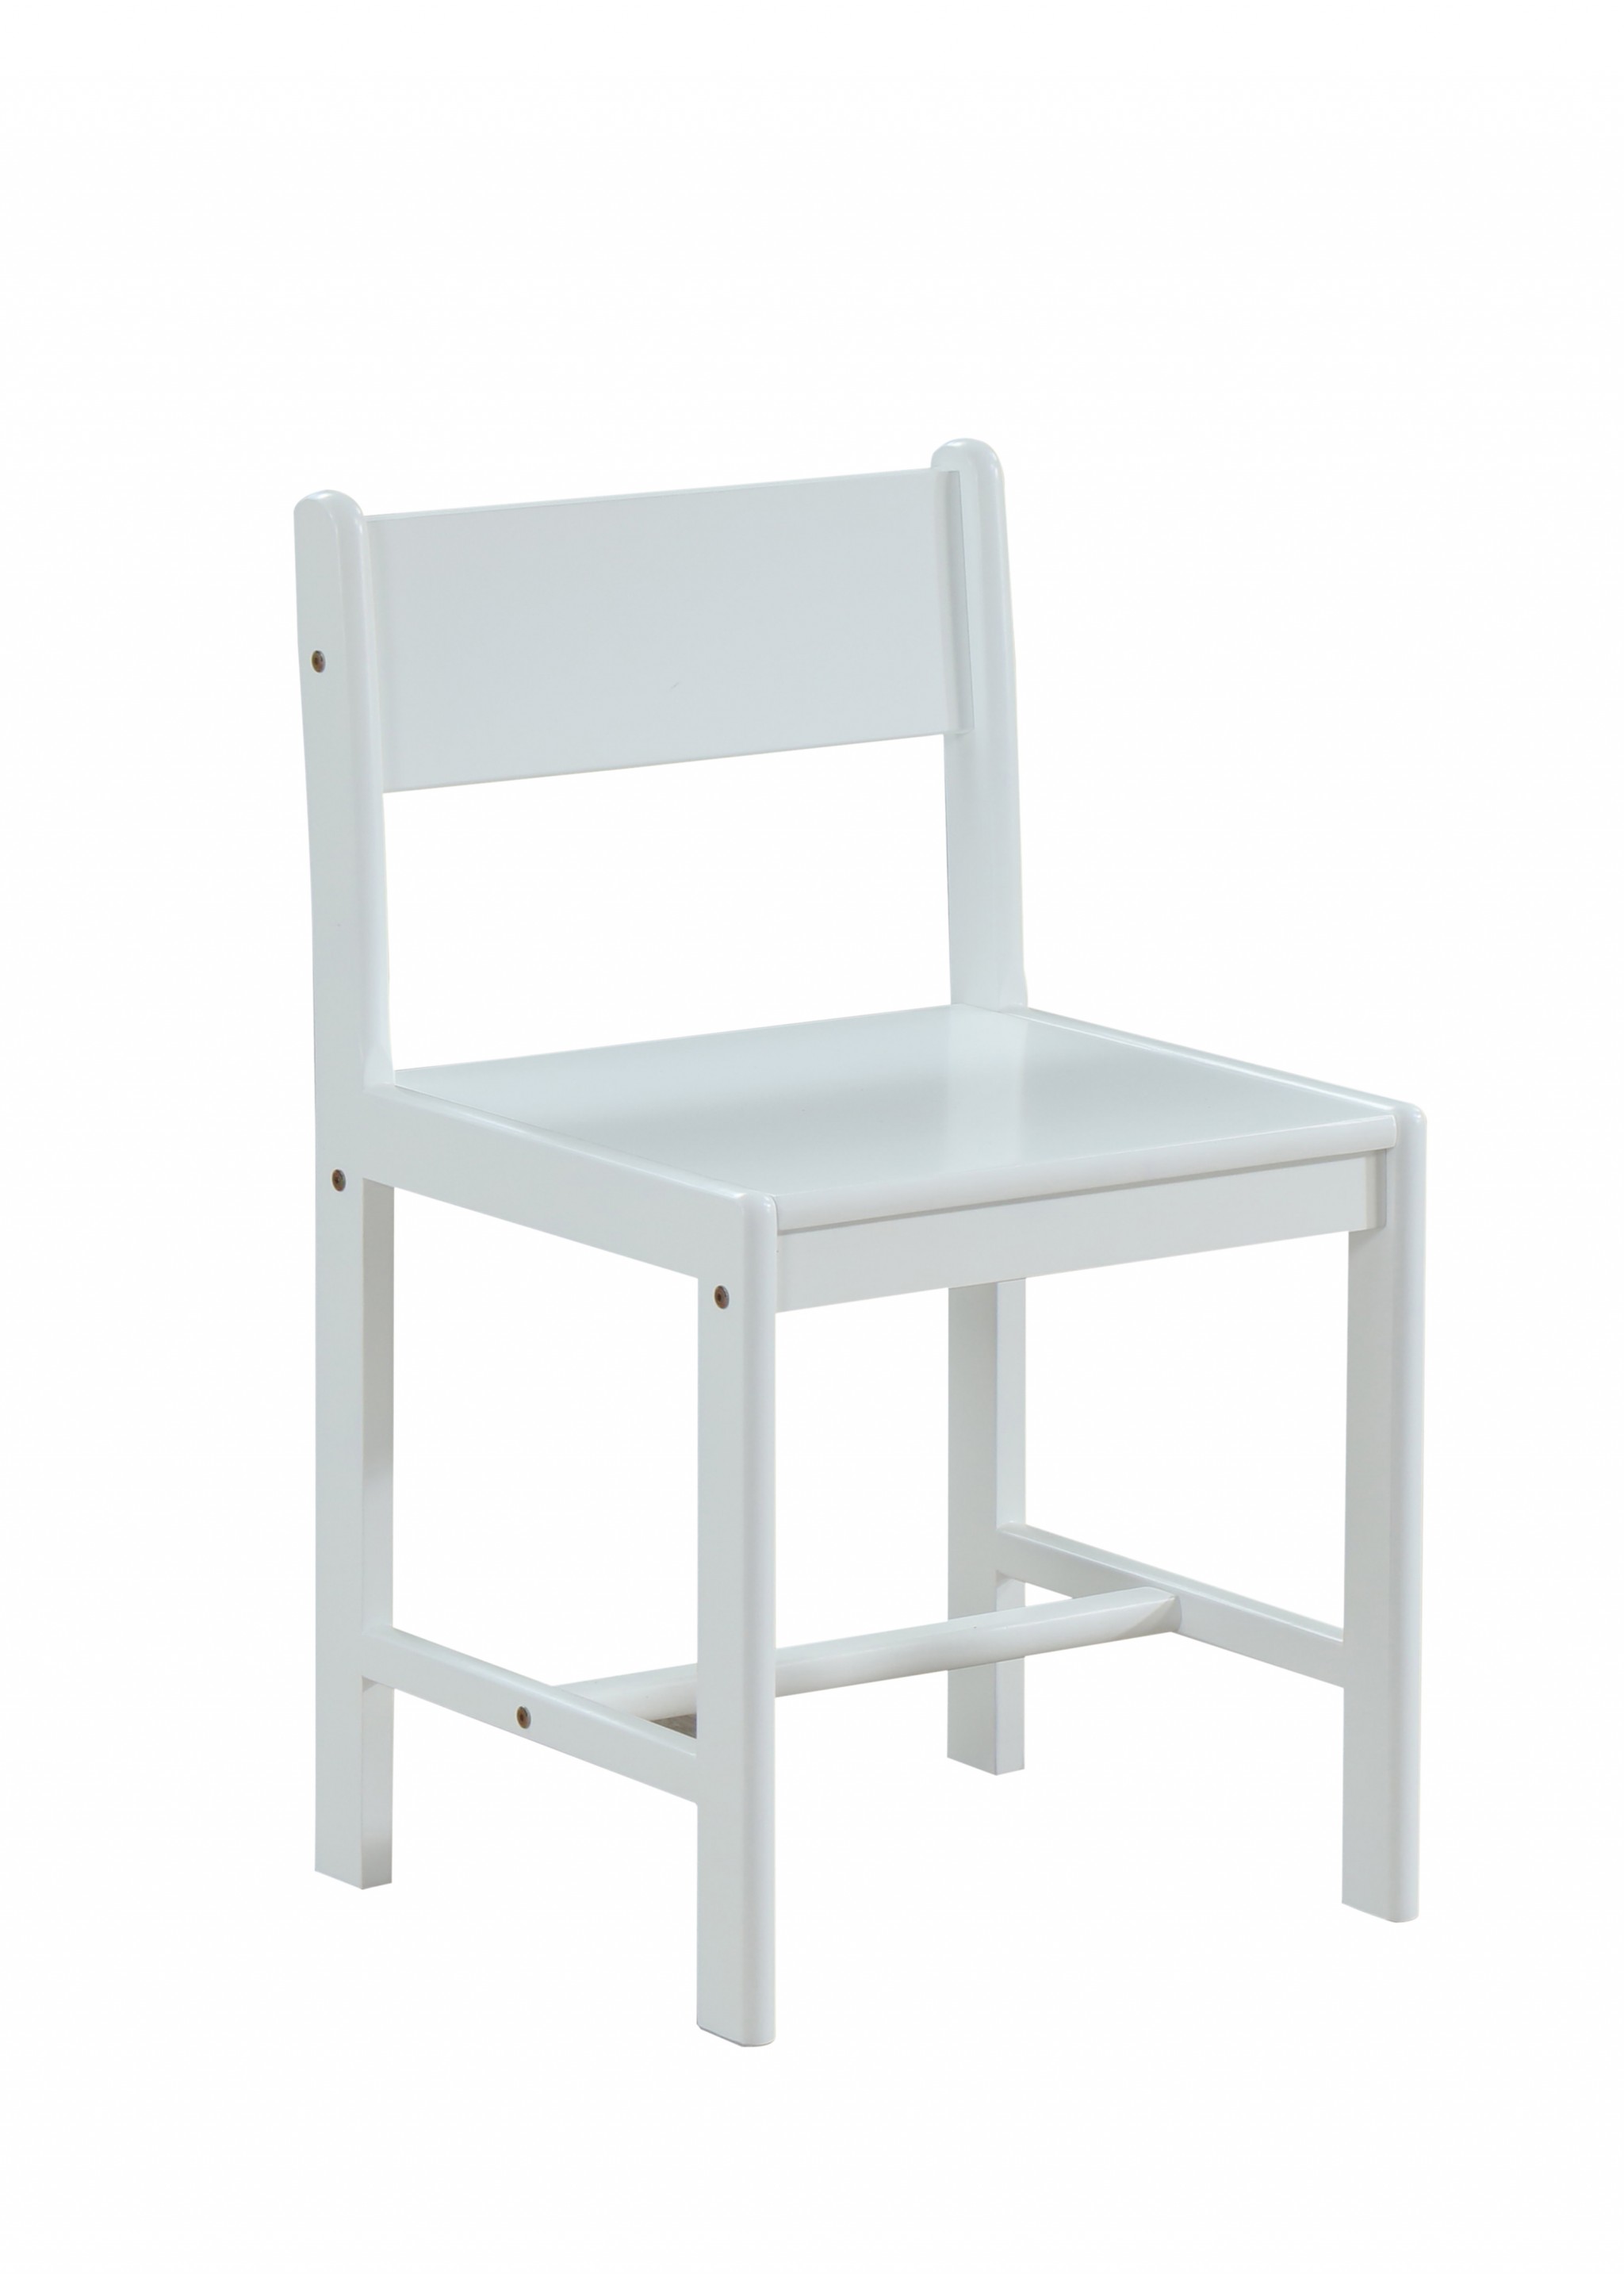 17" X 17" X 30" White Wood Chair